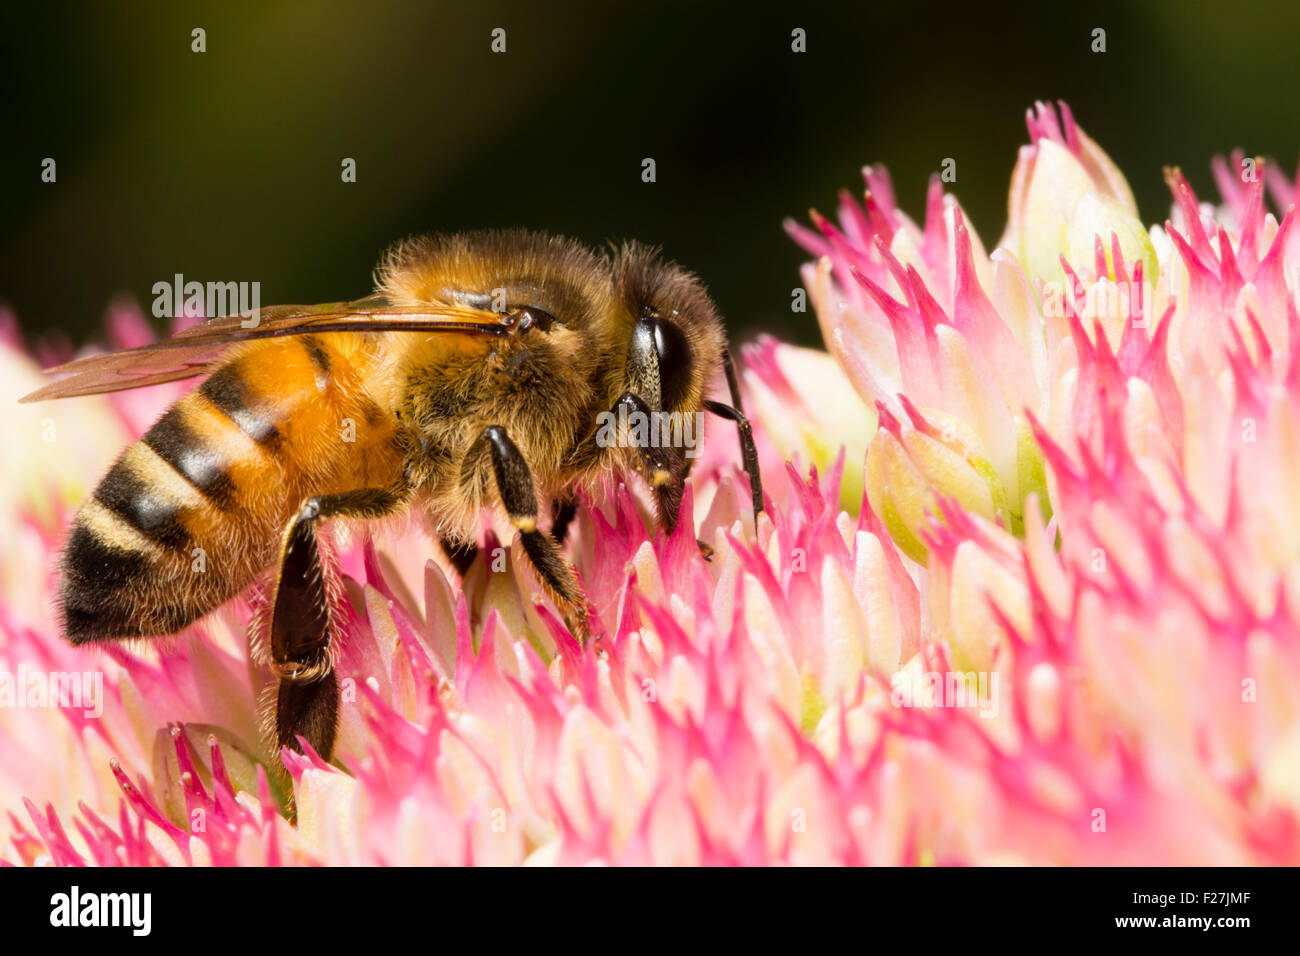 Travailleur de l'abeille, Apis mellifera, se nourrissant de nectar et pollinisent les fleurs Sedum spectabile Banque D'Images